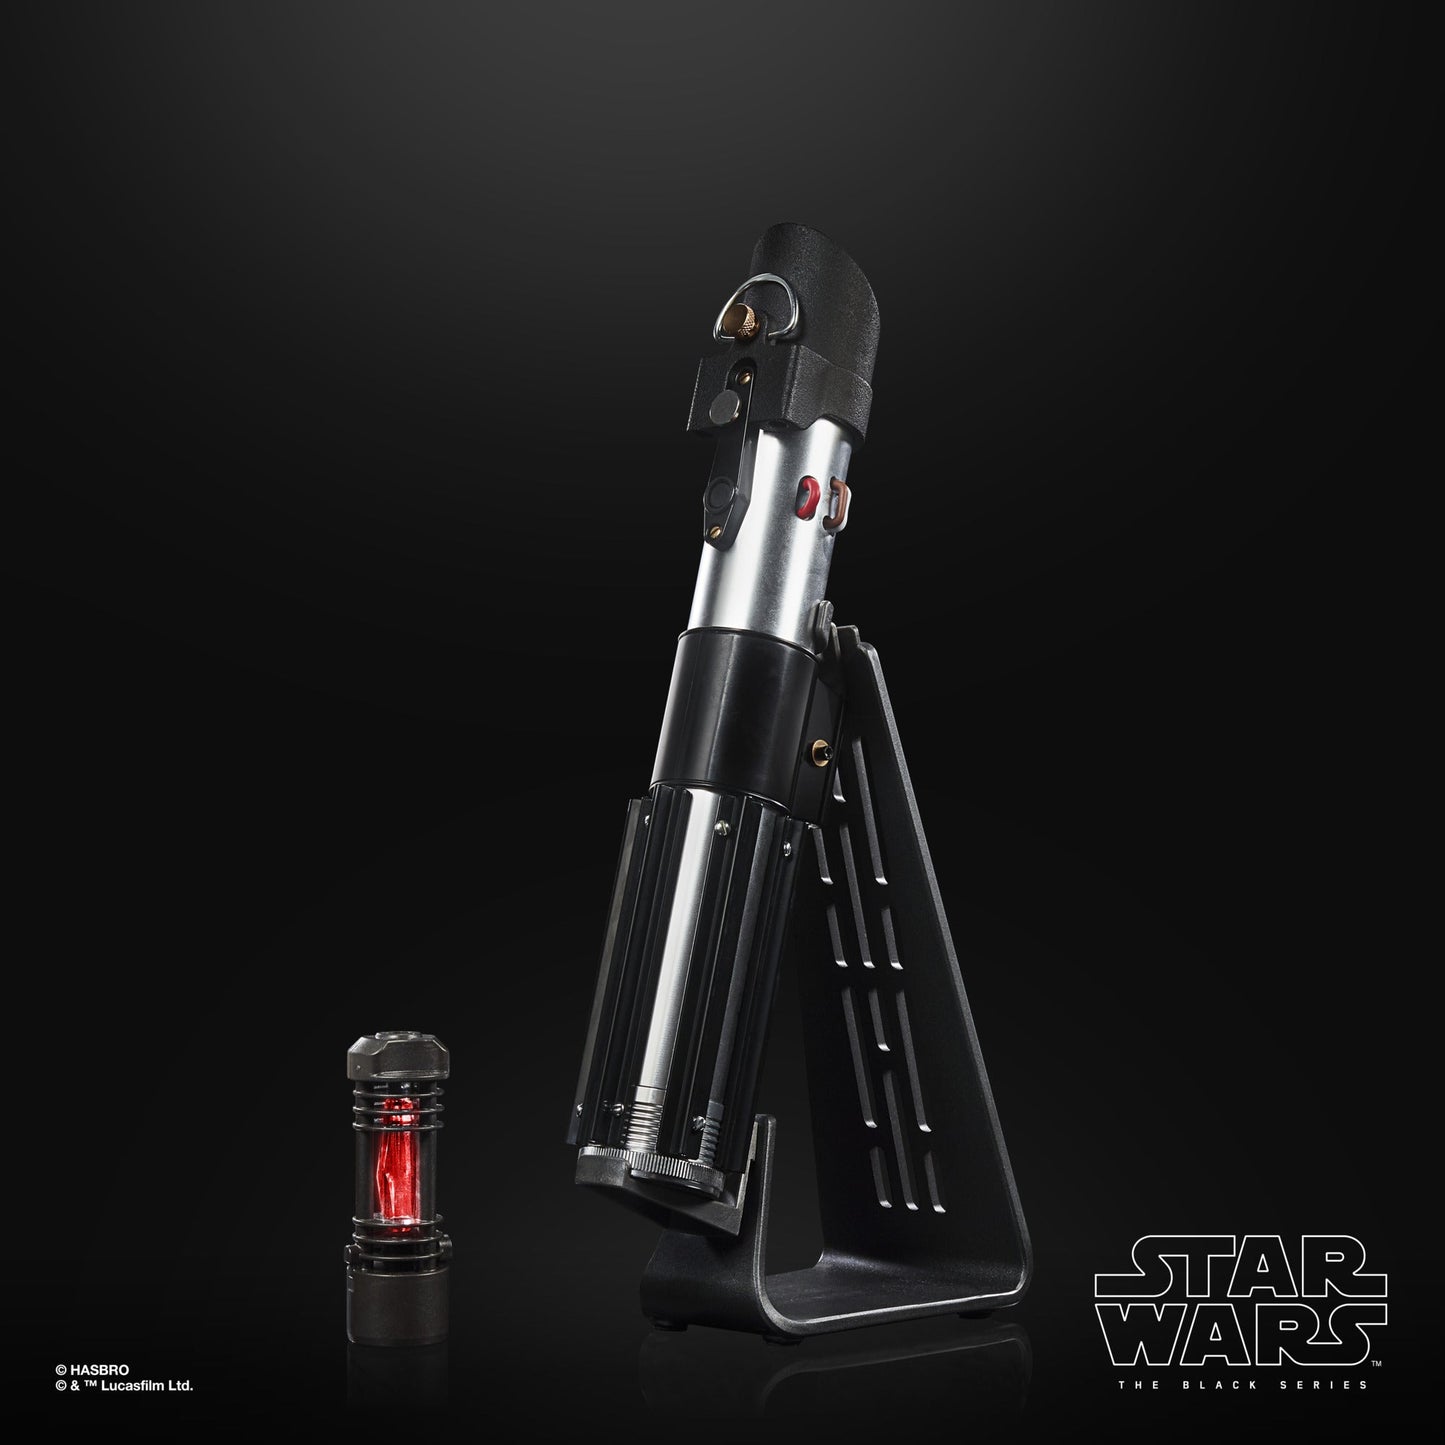 Star Wars: The Black Series - Darth Vader Force FX Elite Lightsaber